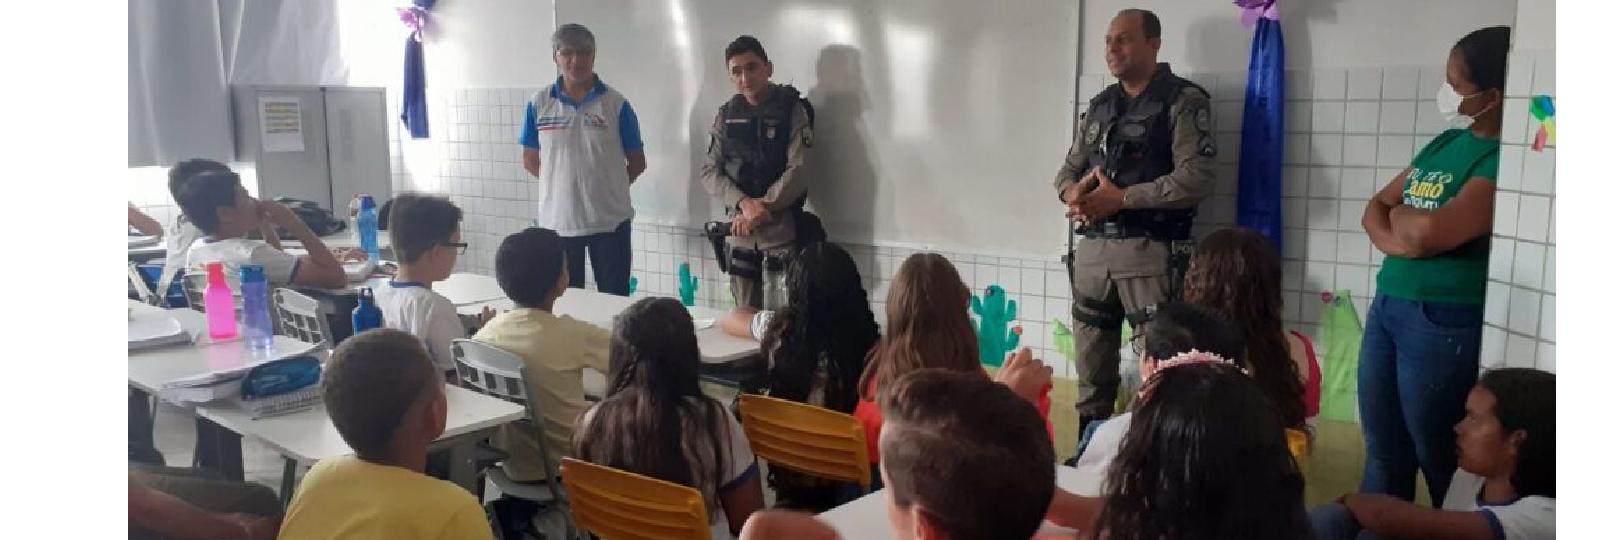 Policiais militares realizam palestra sobre violência nas escolas em São José dos Cordeiros